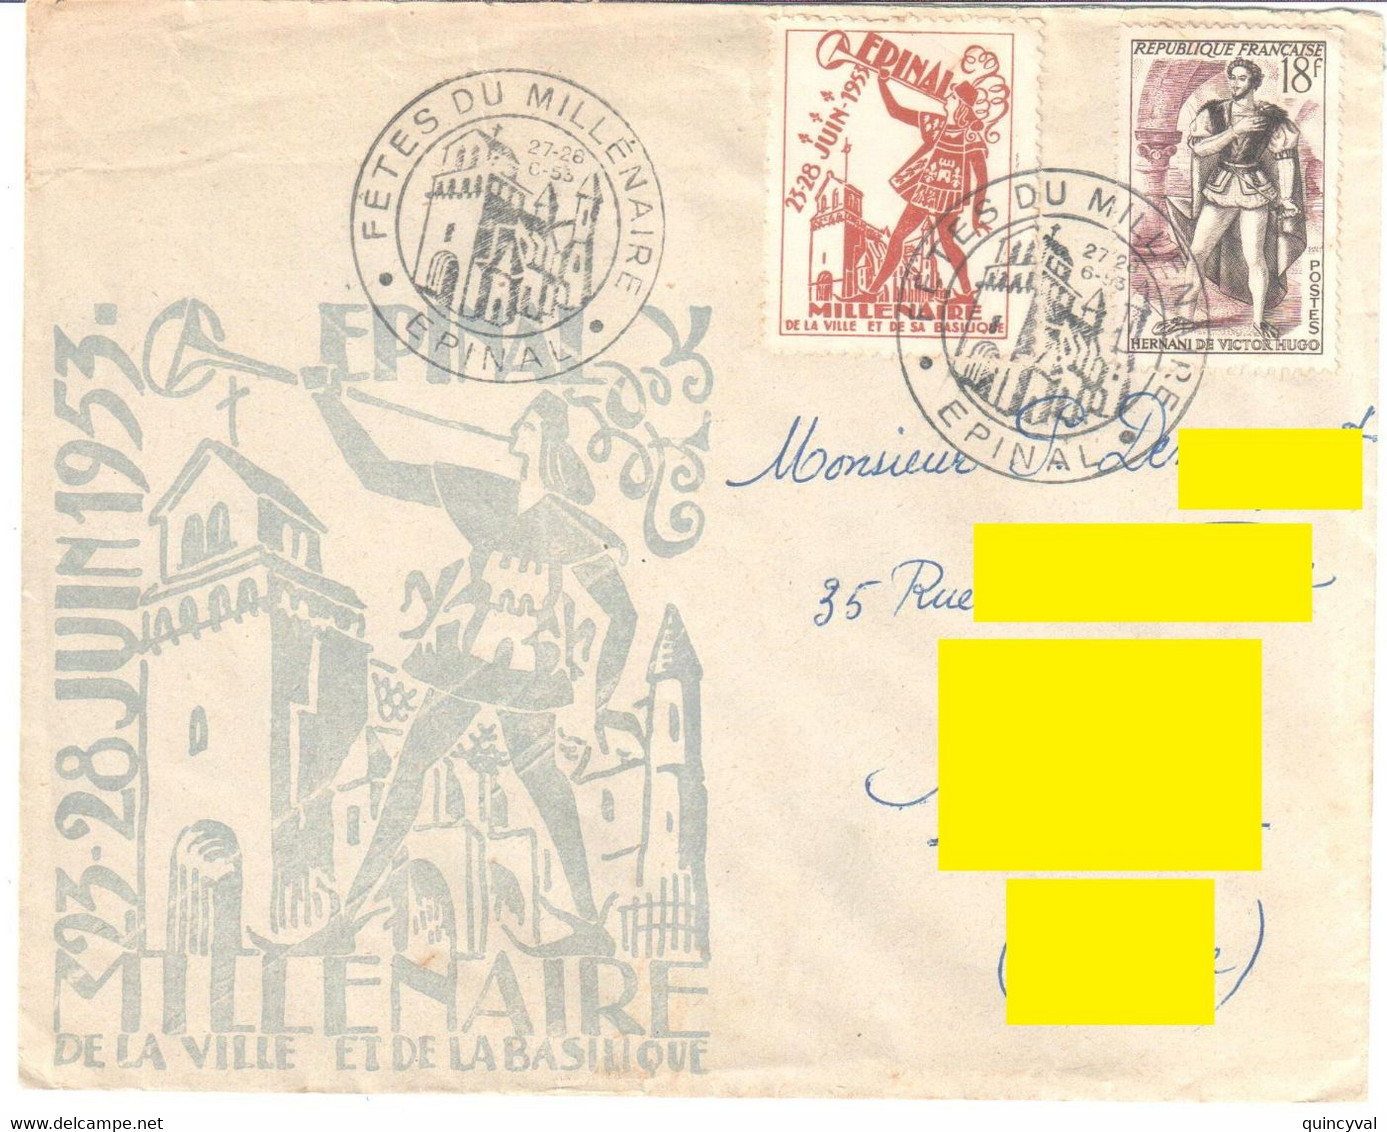 MONTIGNY Les METZ Moselle Lettre Journée Du Timbre 6 Et 7 Mars 1948 6F + 4F Arago Yv 794 - Commemorative Postmarks